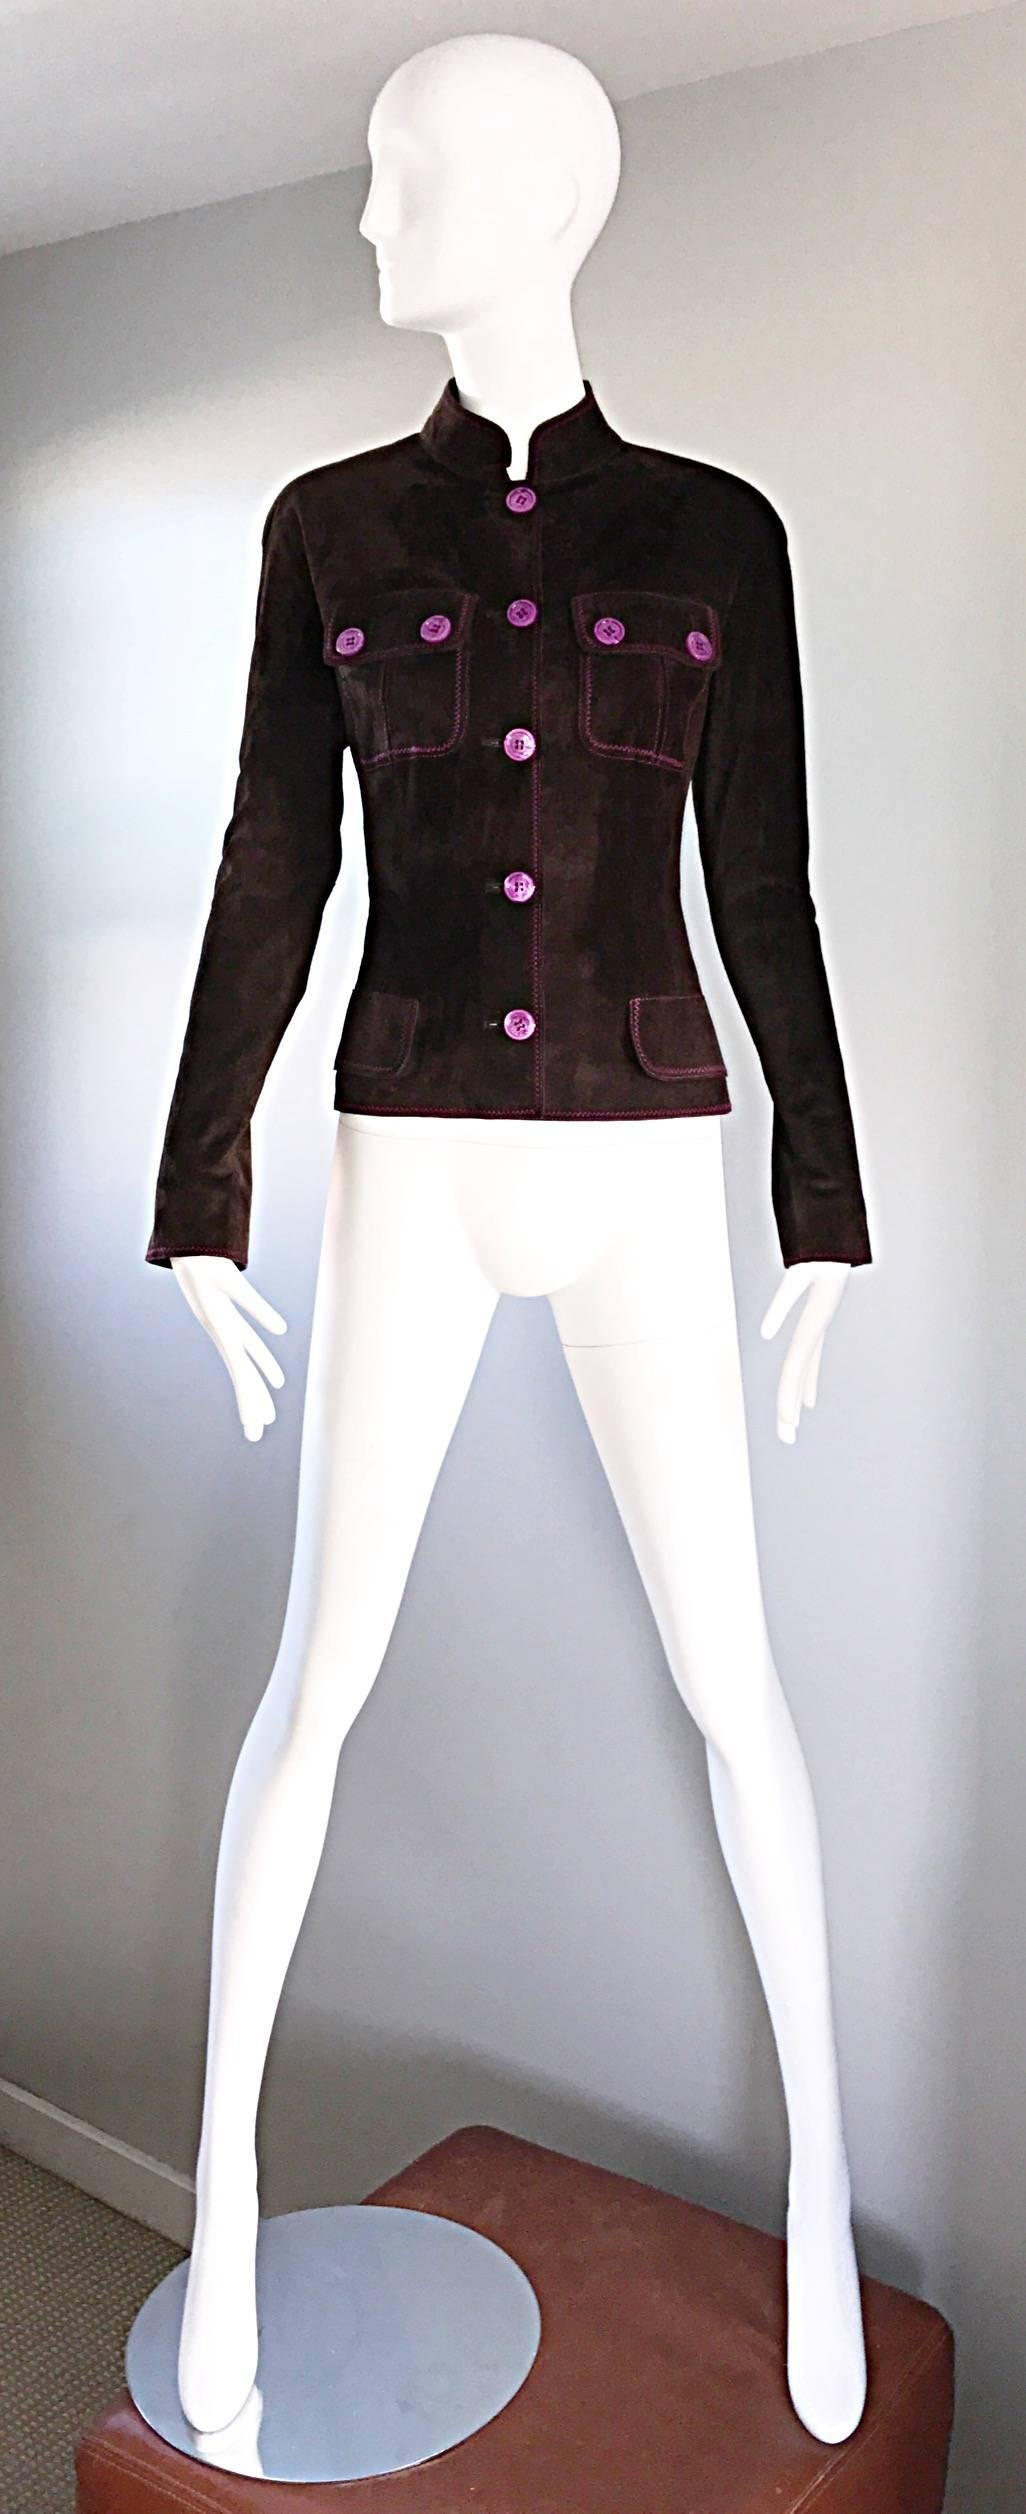 Chic veste Moto vintage des années 90 en cuir de bovin EMANUEL UNGARO ! Riche couleur marron chocolat, avec des boutons et des surpiqûres de couleur violet / rose fuchsia. Slim tailored et s'adapte comme un rêve ! Quatre poches sur le devant.